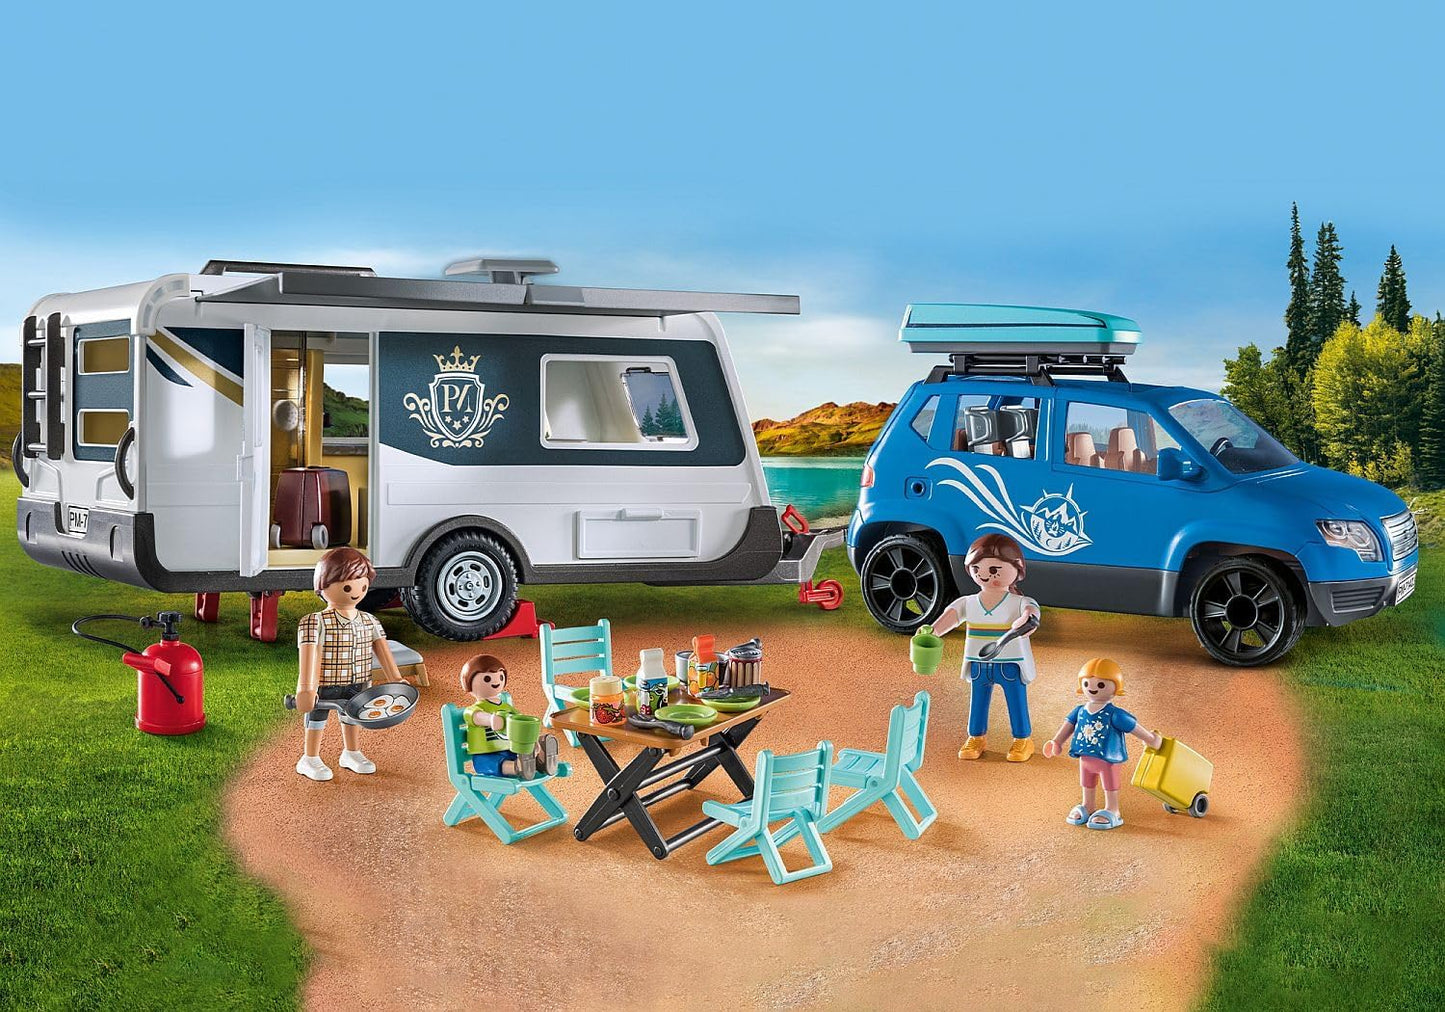 Playmobil 71423 Caravana divertida para a família com carro, brinquedo ao ar livre e dramatização imaginativa, conjuntos adequados para crianças de 4 anos ou mais